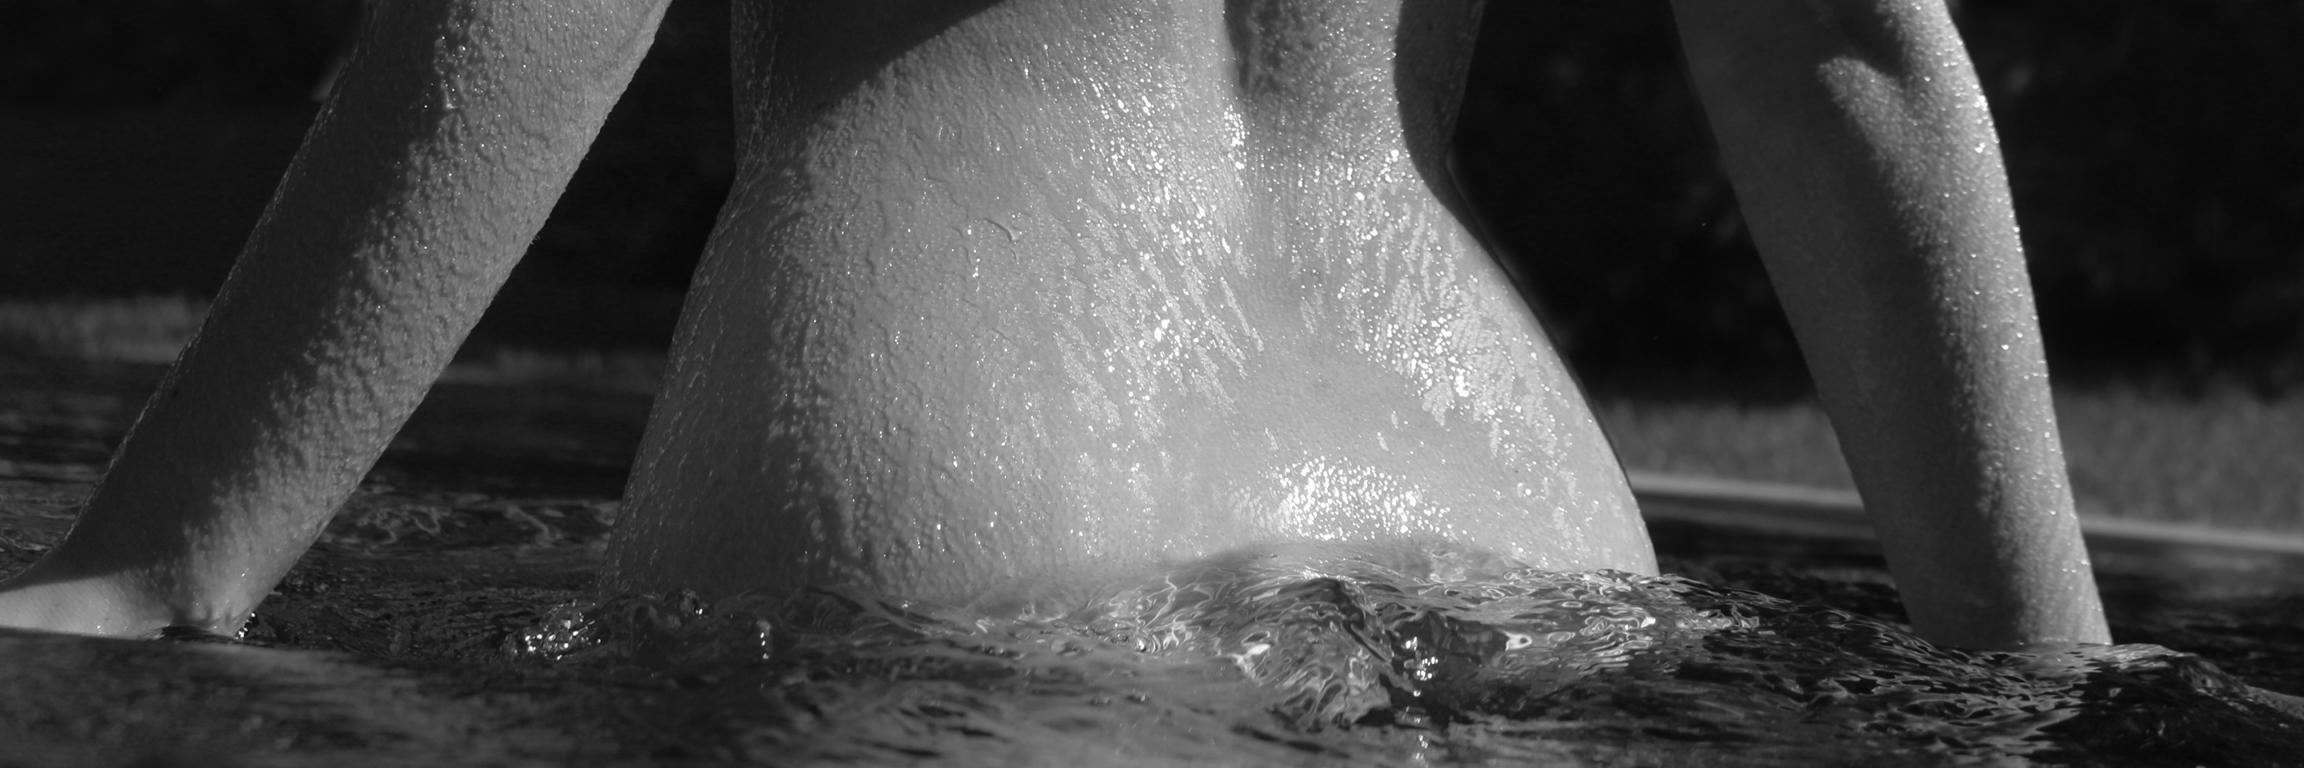 Dell Cullum Nude Photograph - Waist High Water